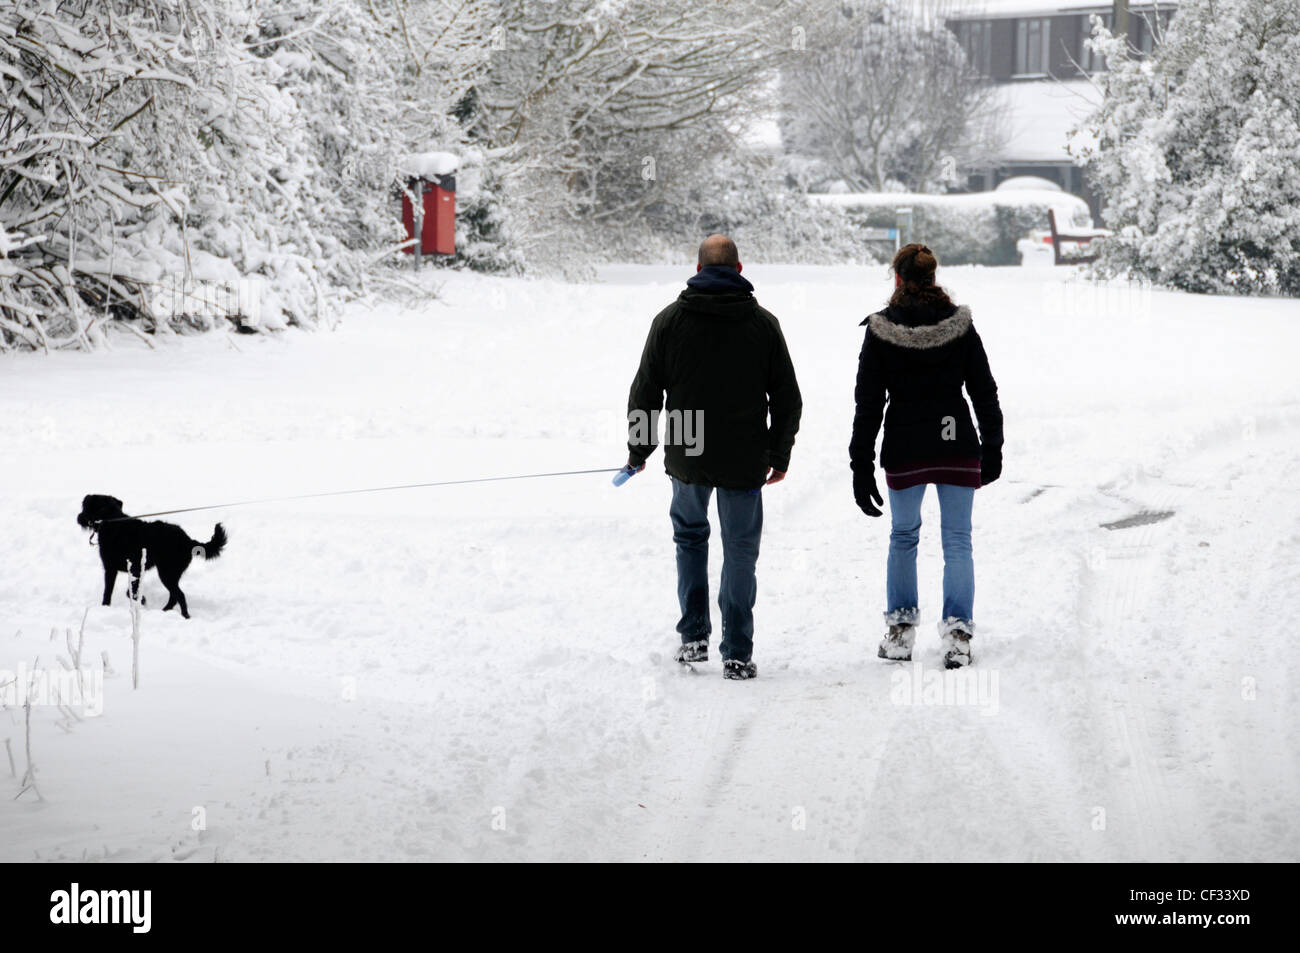 Marcher dans la neige le long de routes de campagne, couple matin dog walk après les fortes chutes de neige Brentwood Essex England UK Banque D'Images